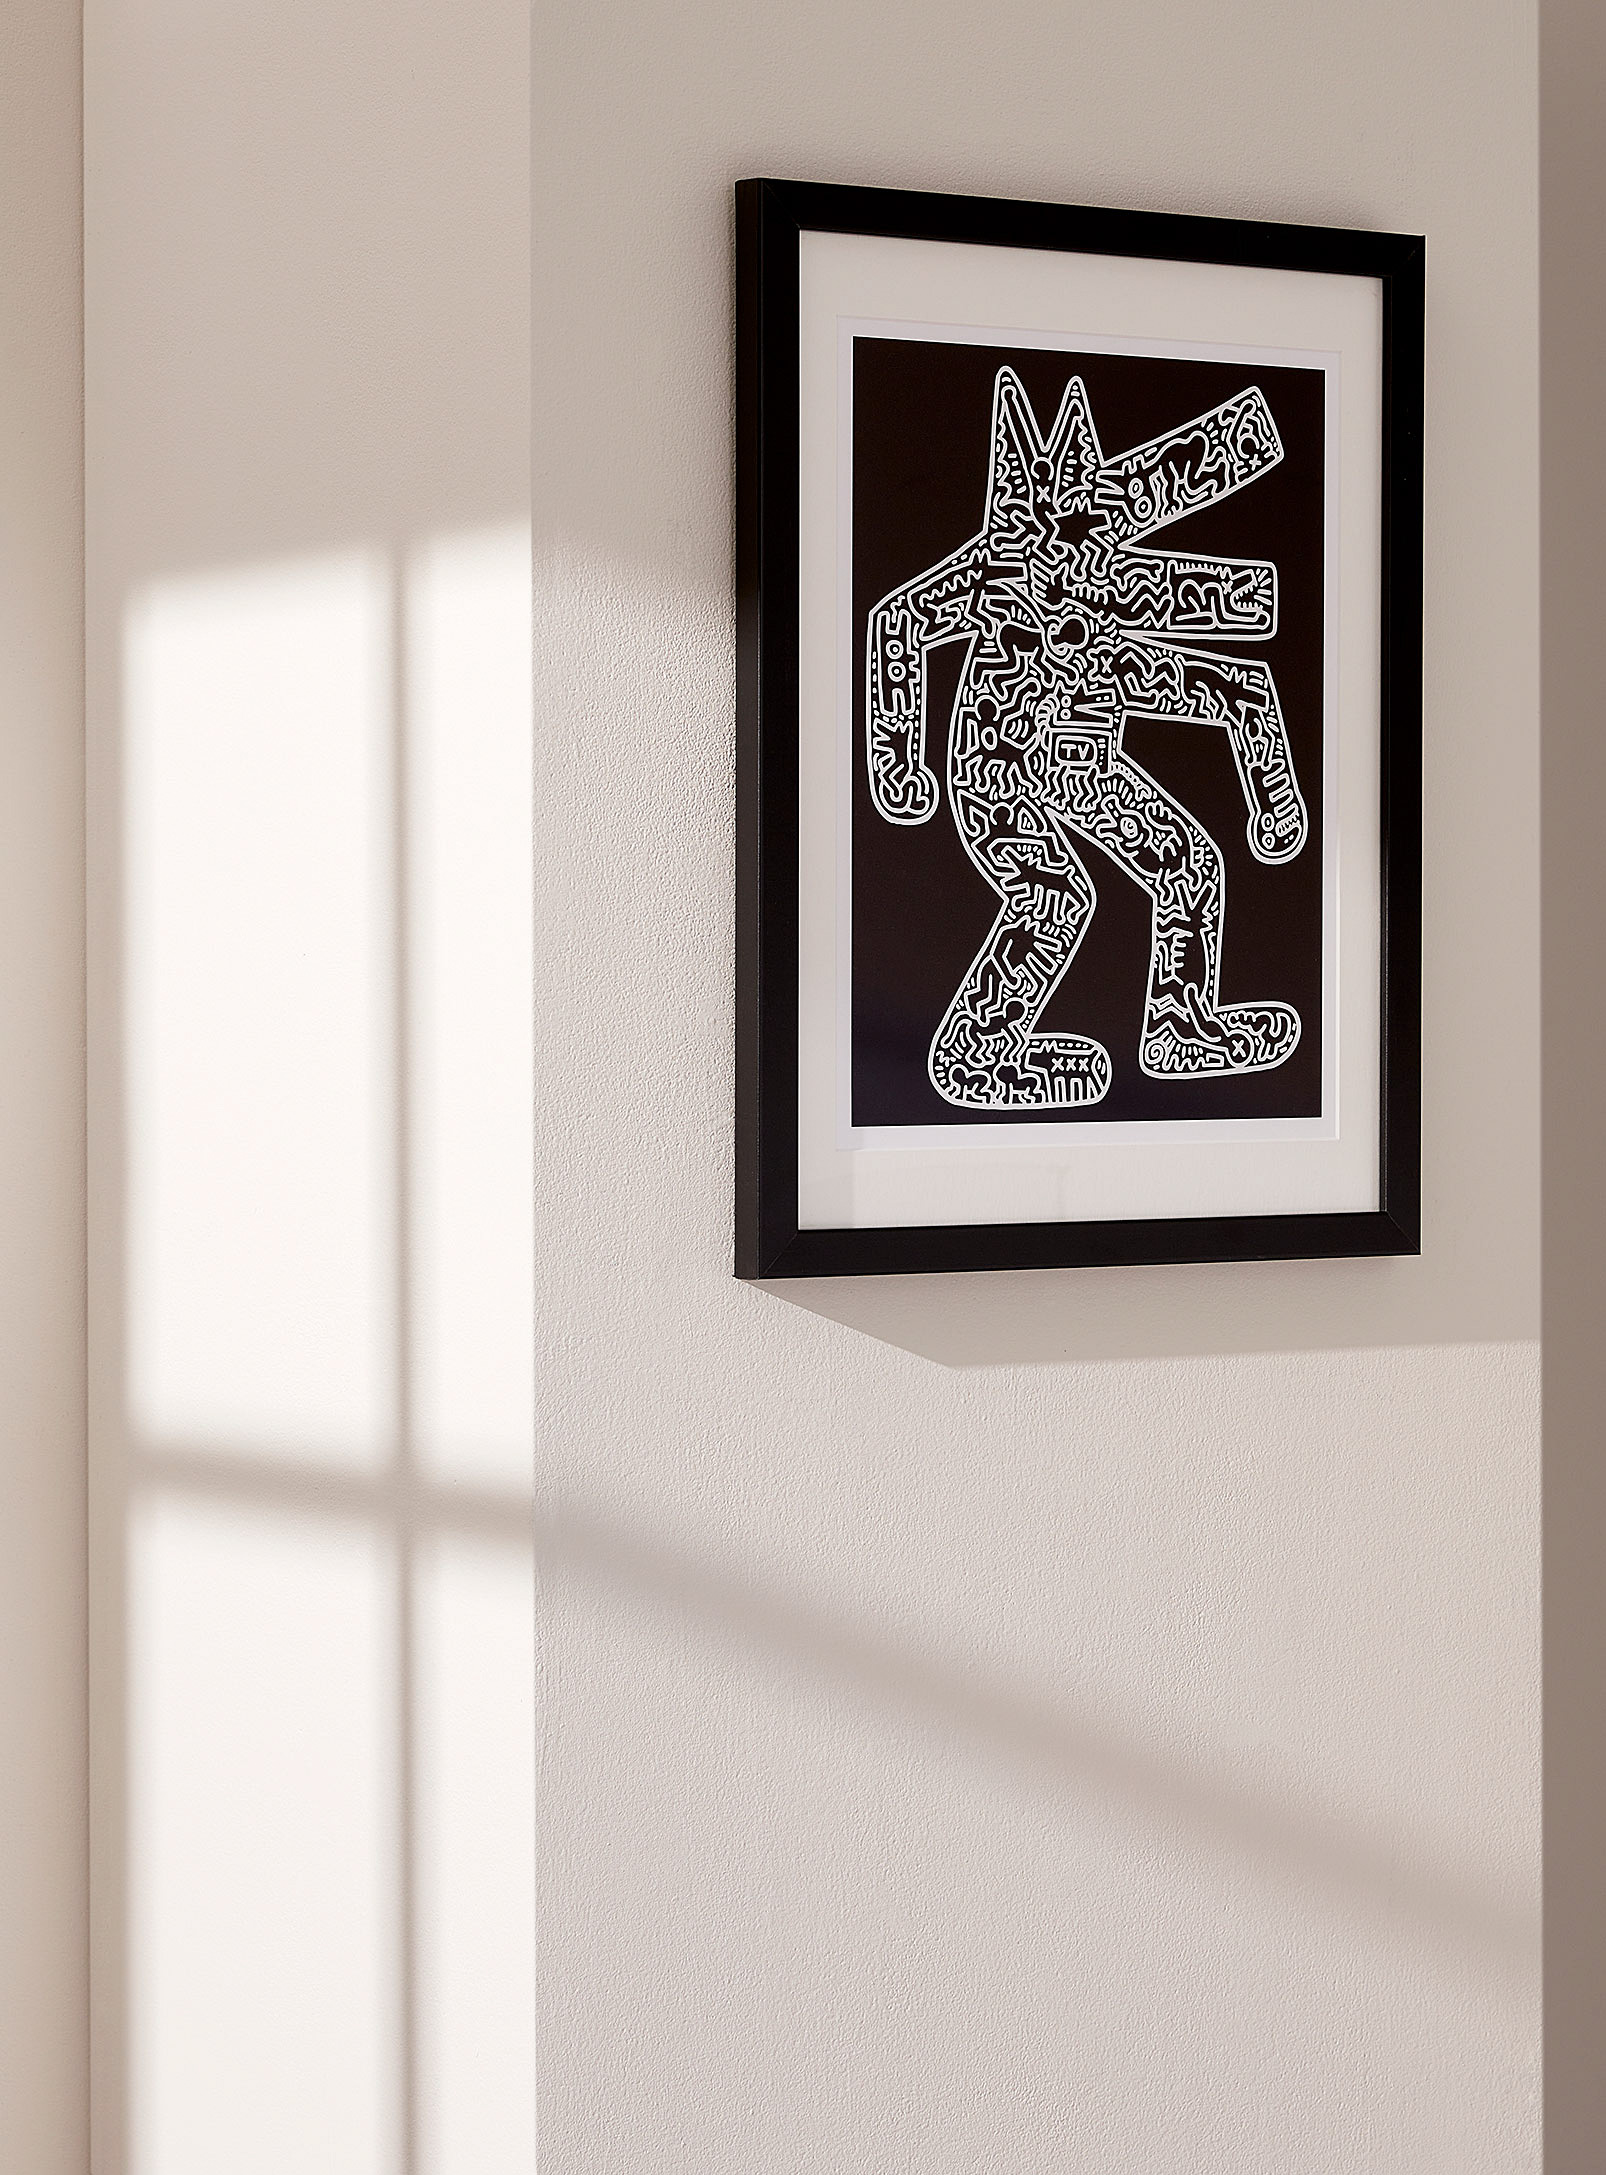 Simons Maison - Barking dog art print Keith Haring